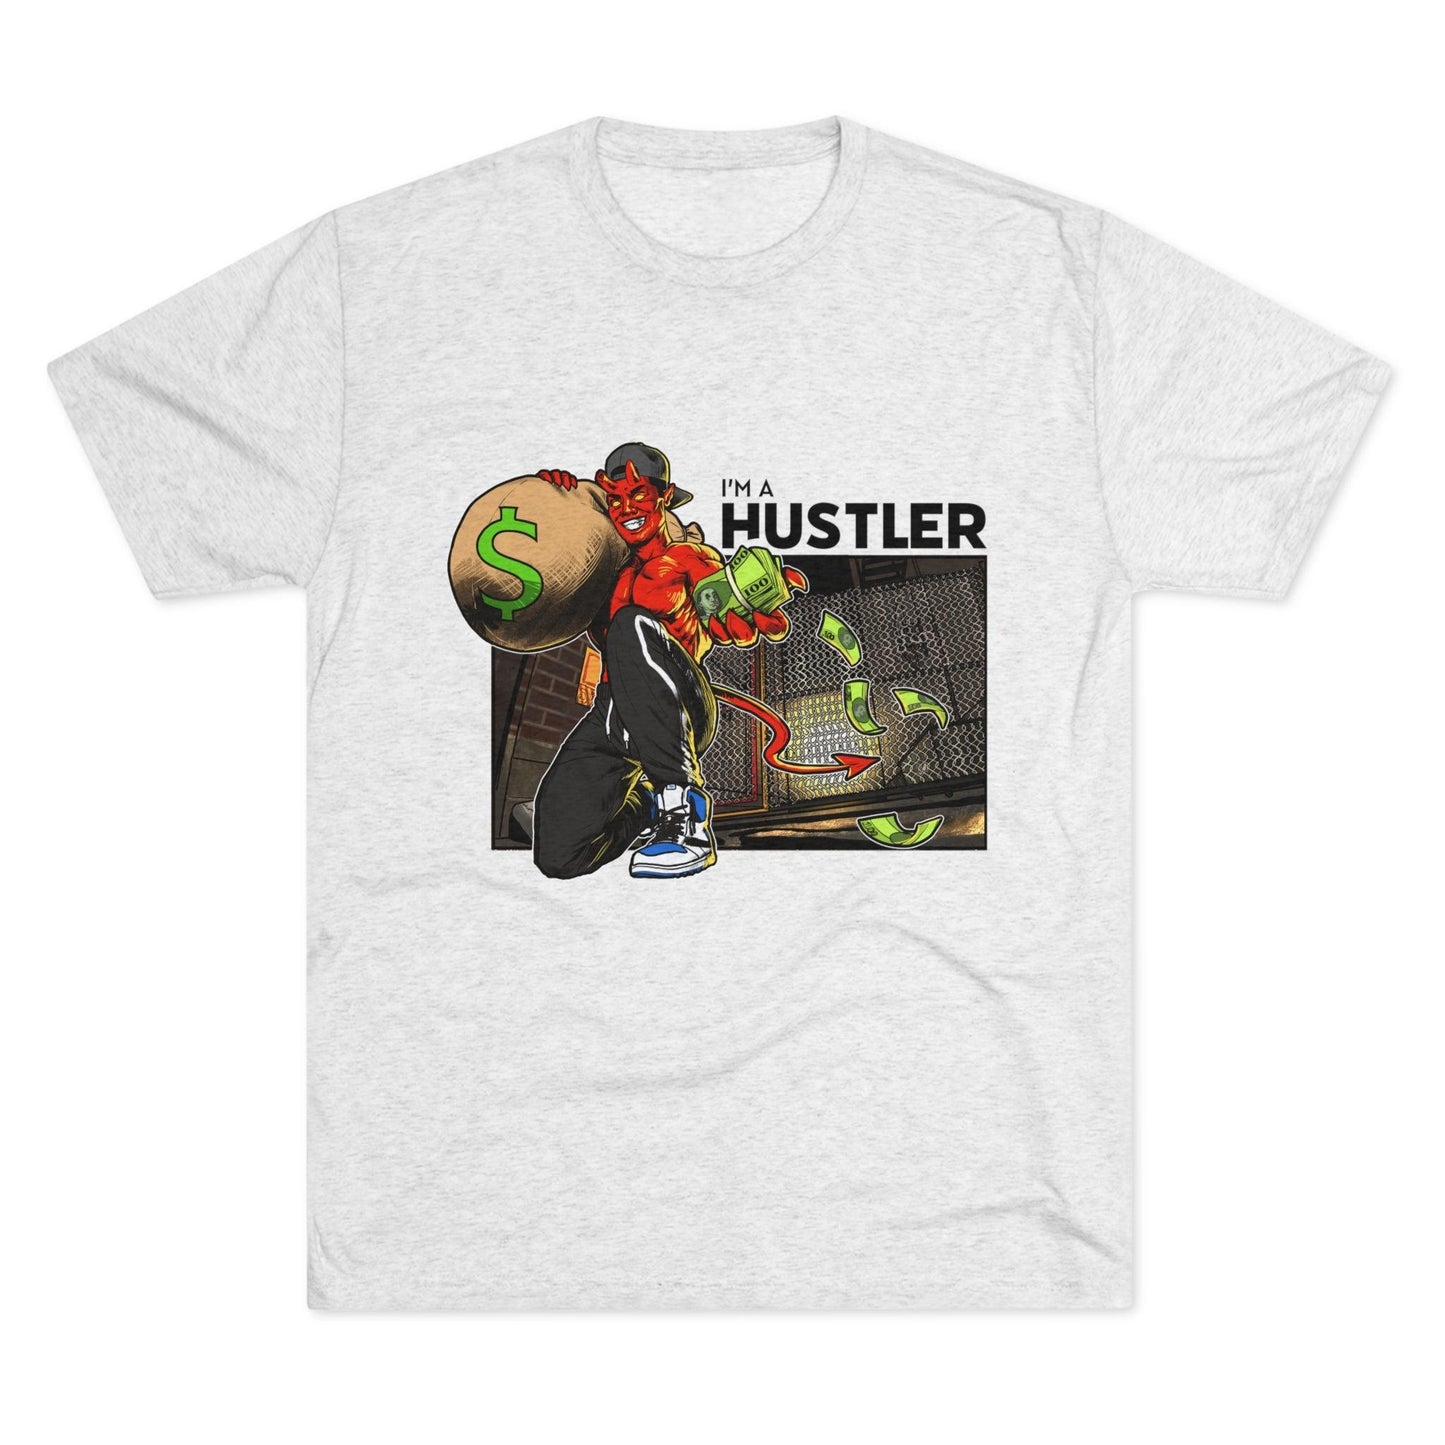 Hustler - Unisex Tri-Blend Crew Tee - Shaneinvasion